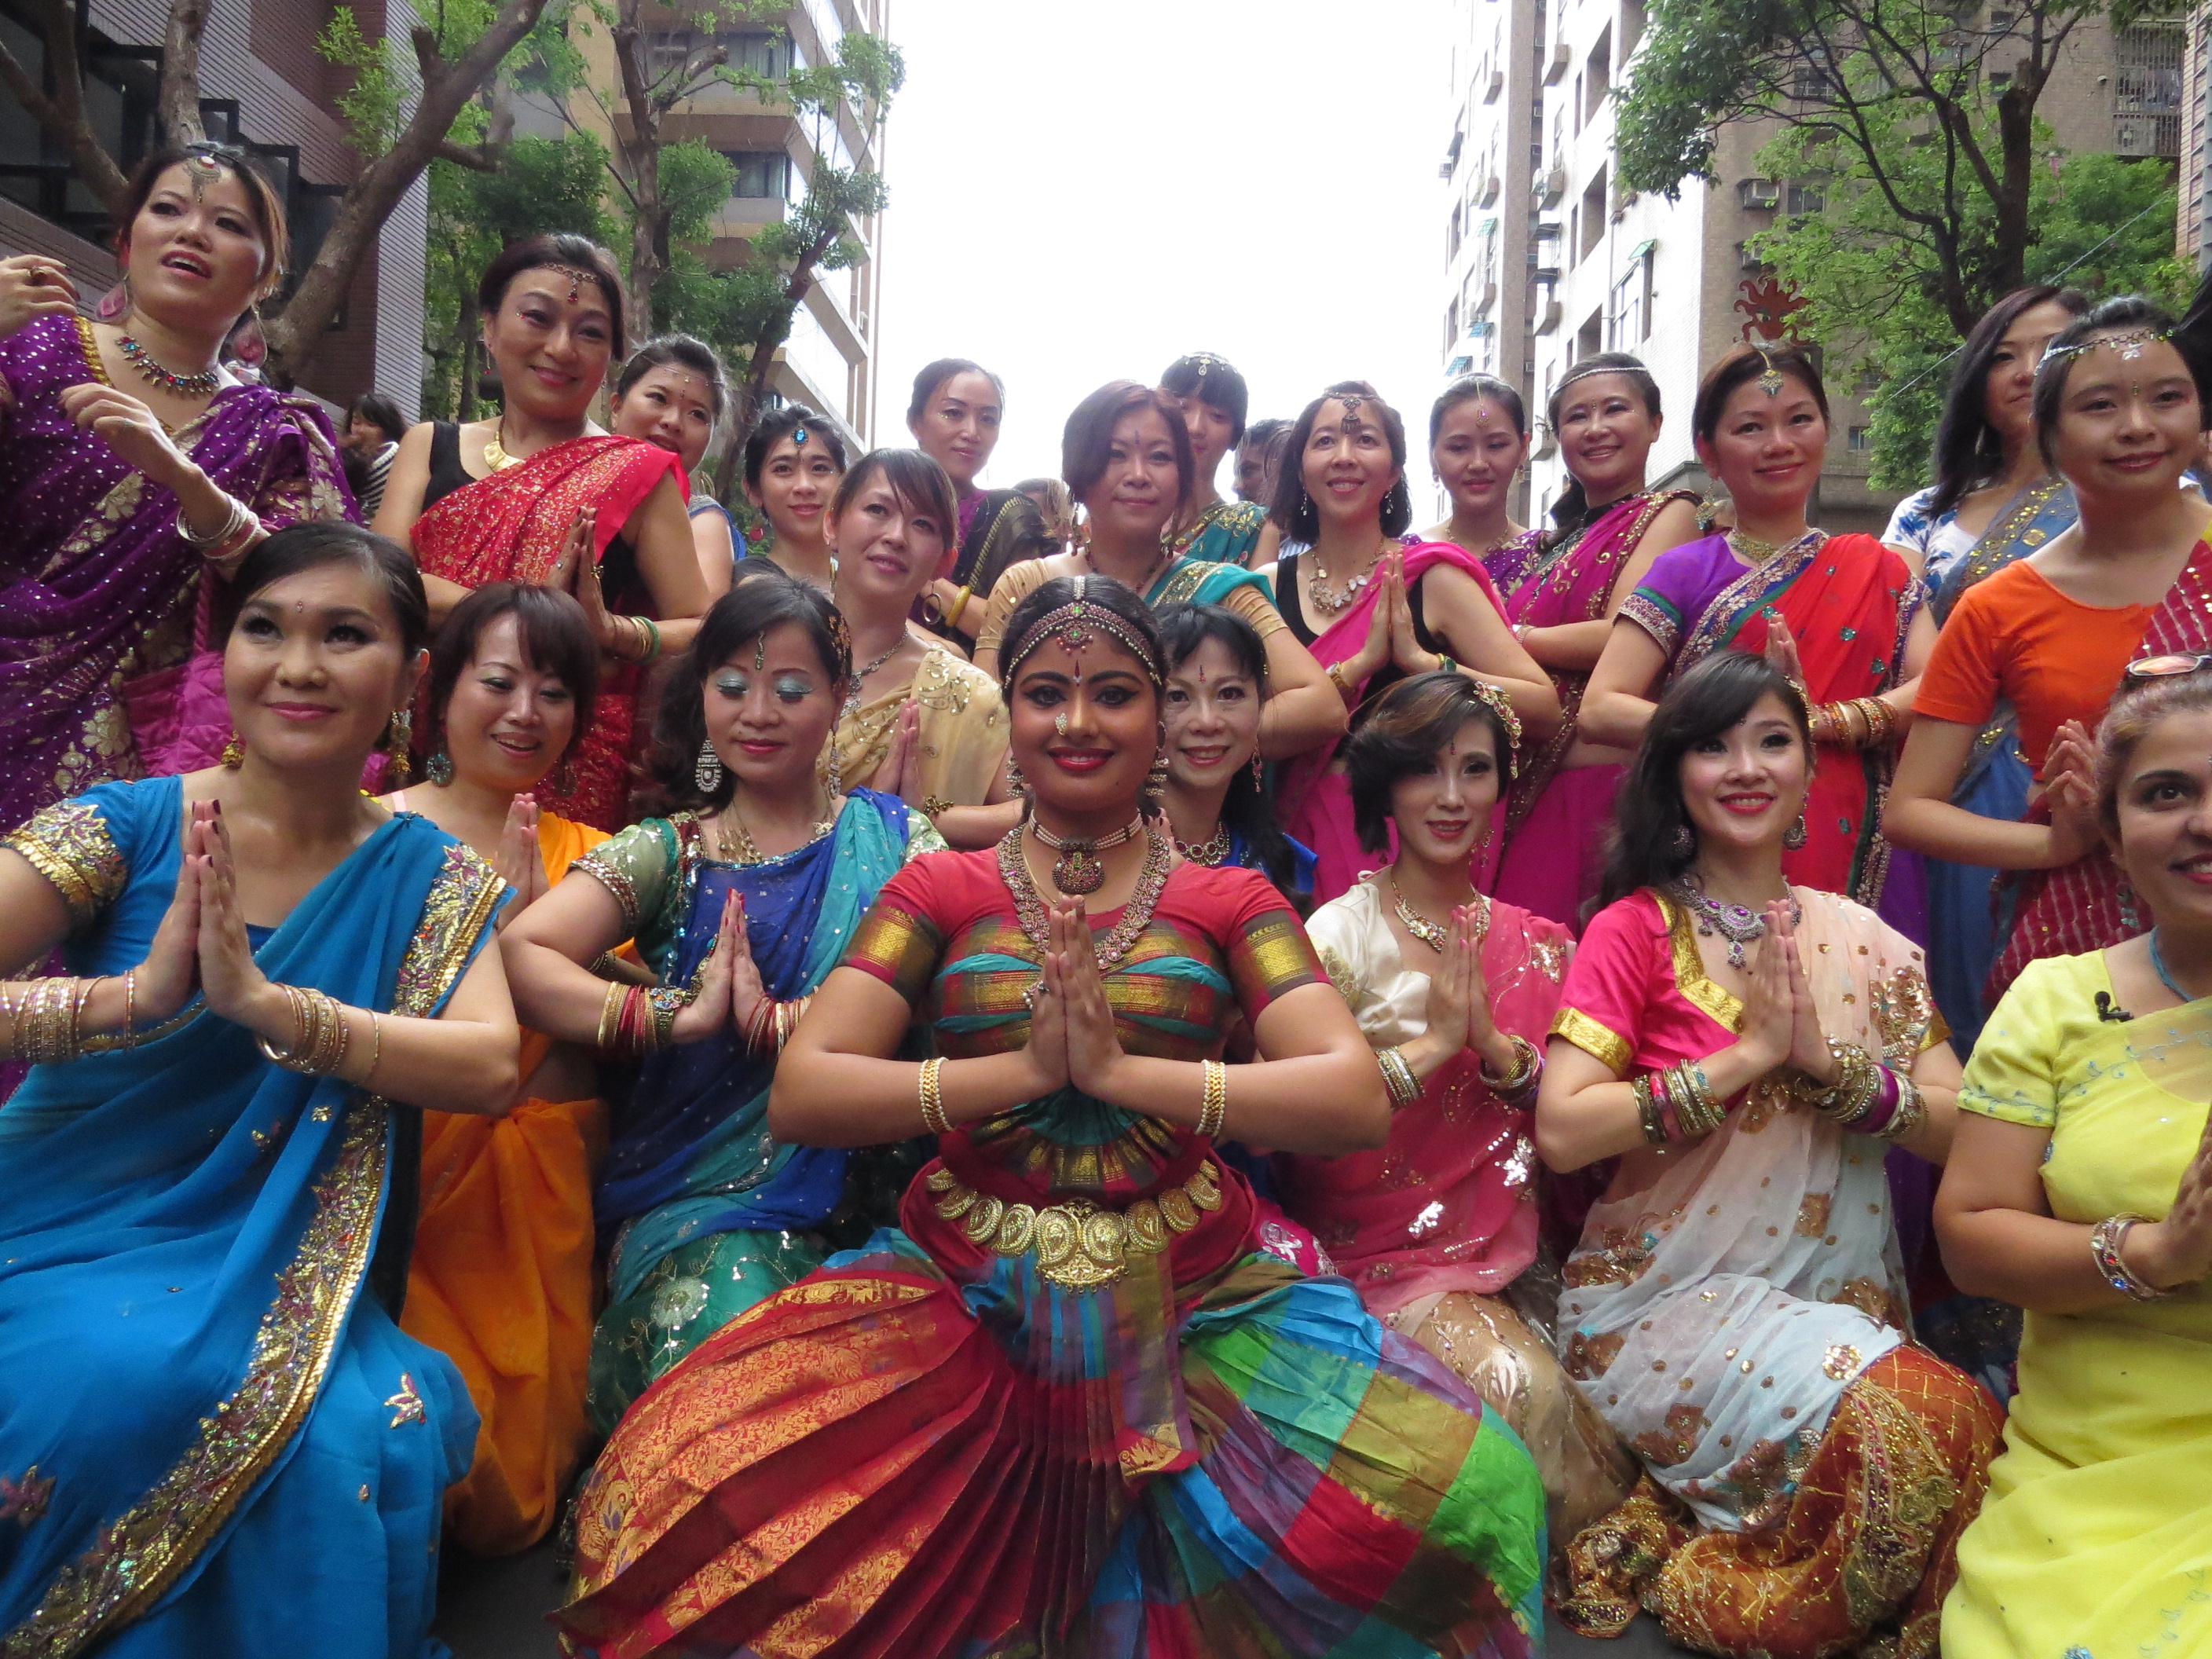 2014新北市印度文化節  印度紗麗美女踩街遊行　印度美食、藝品展示